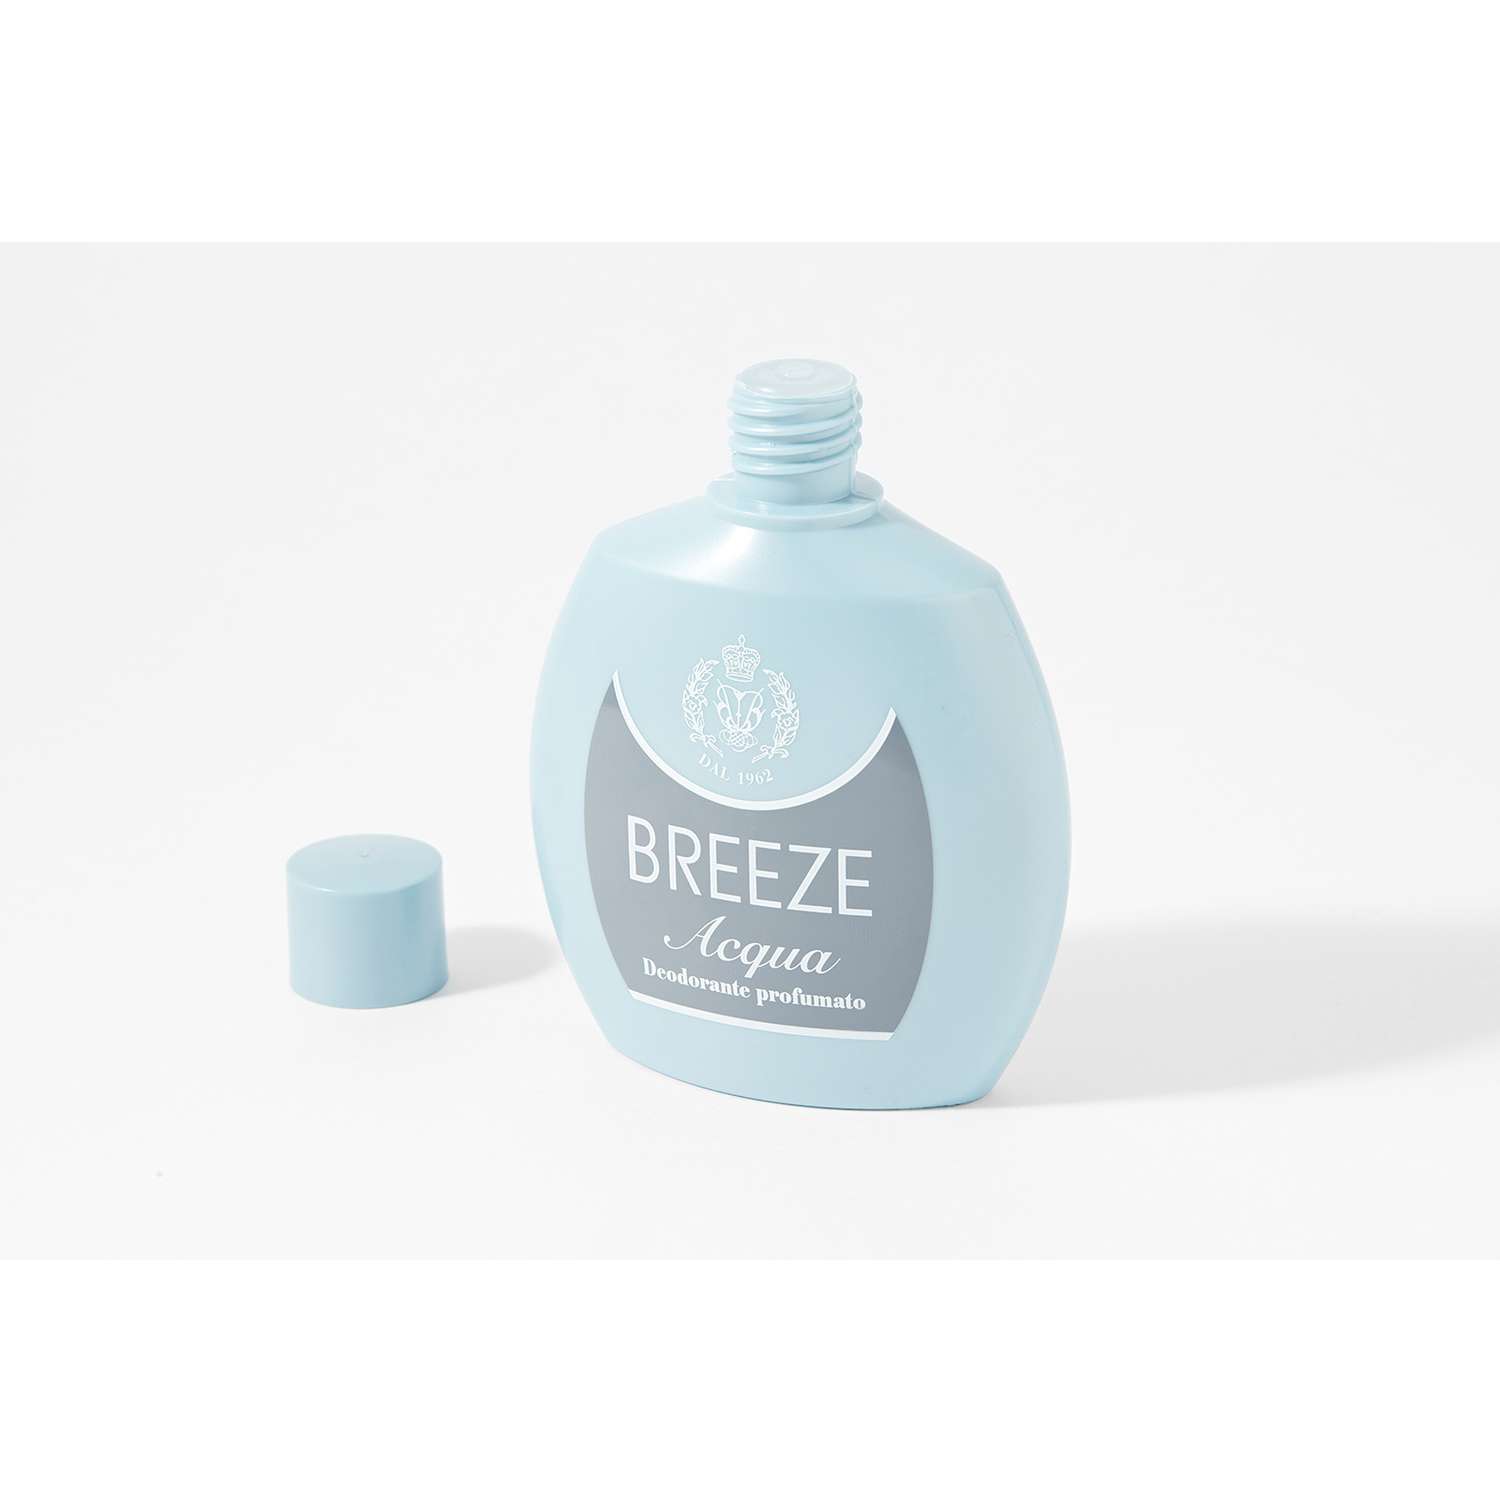 Дезодорант парфюмированный BREEZE acqua 100мл - фото 7